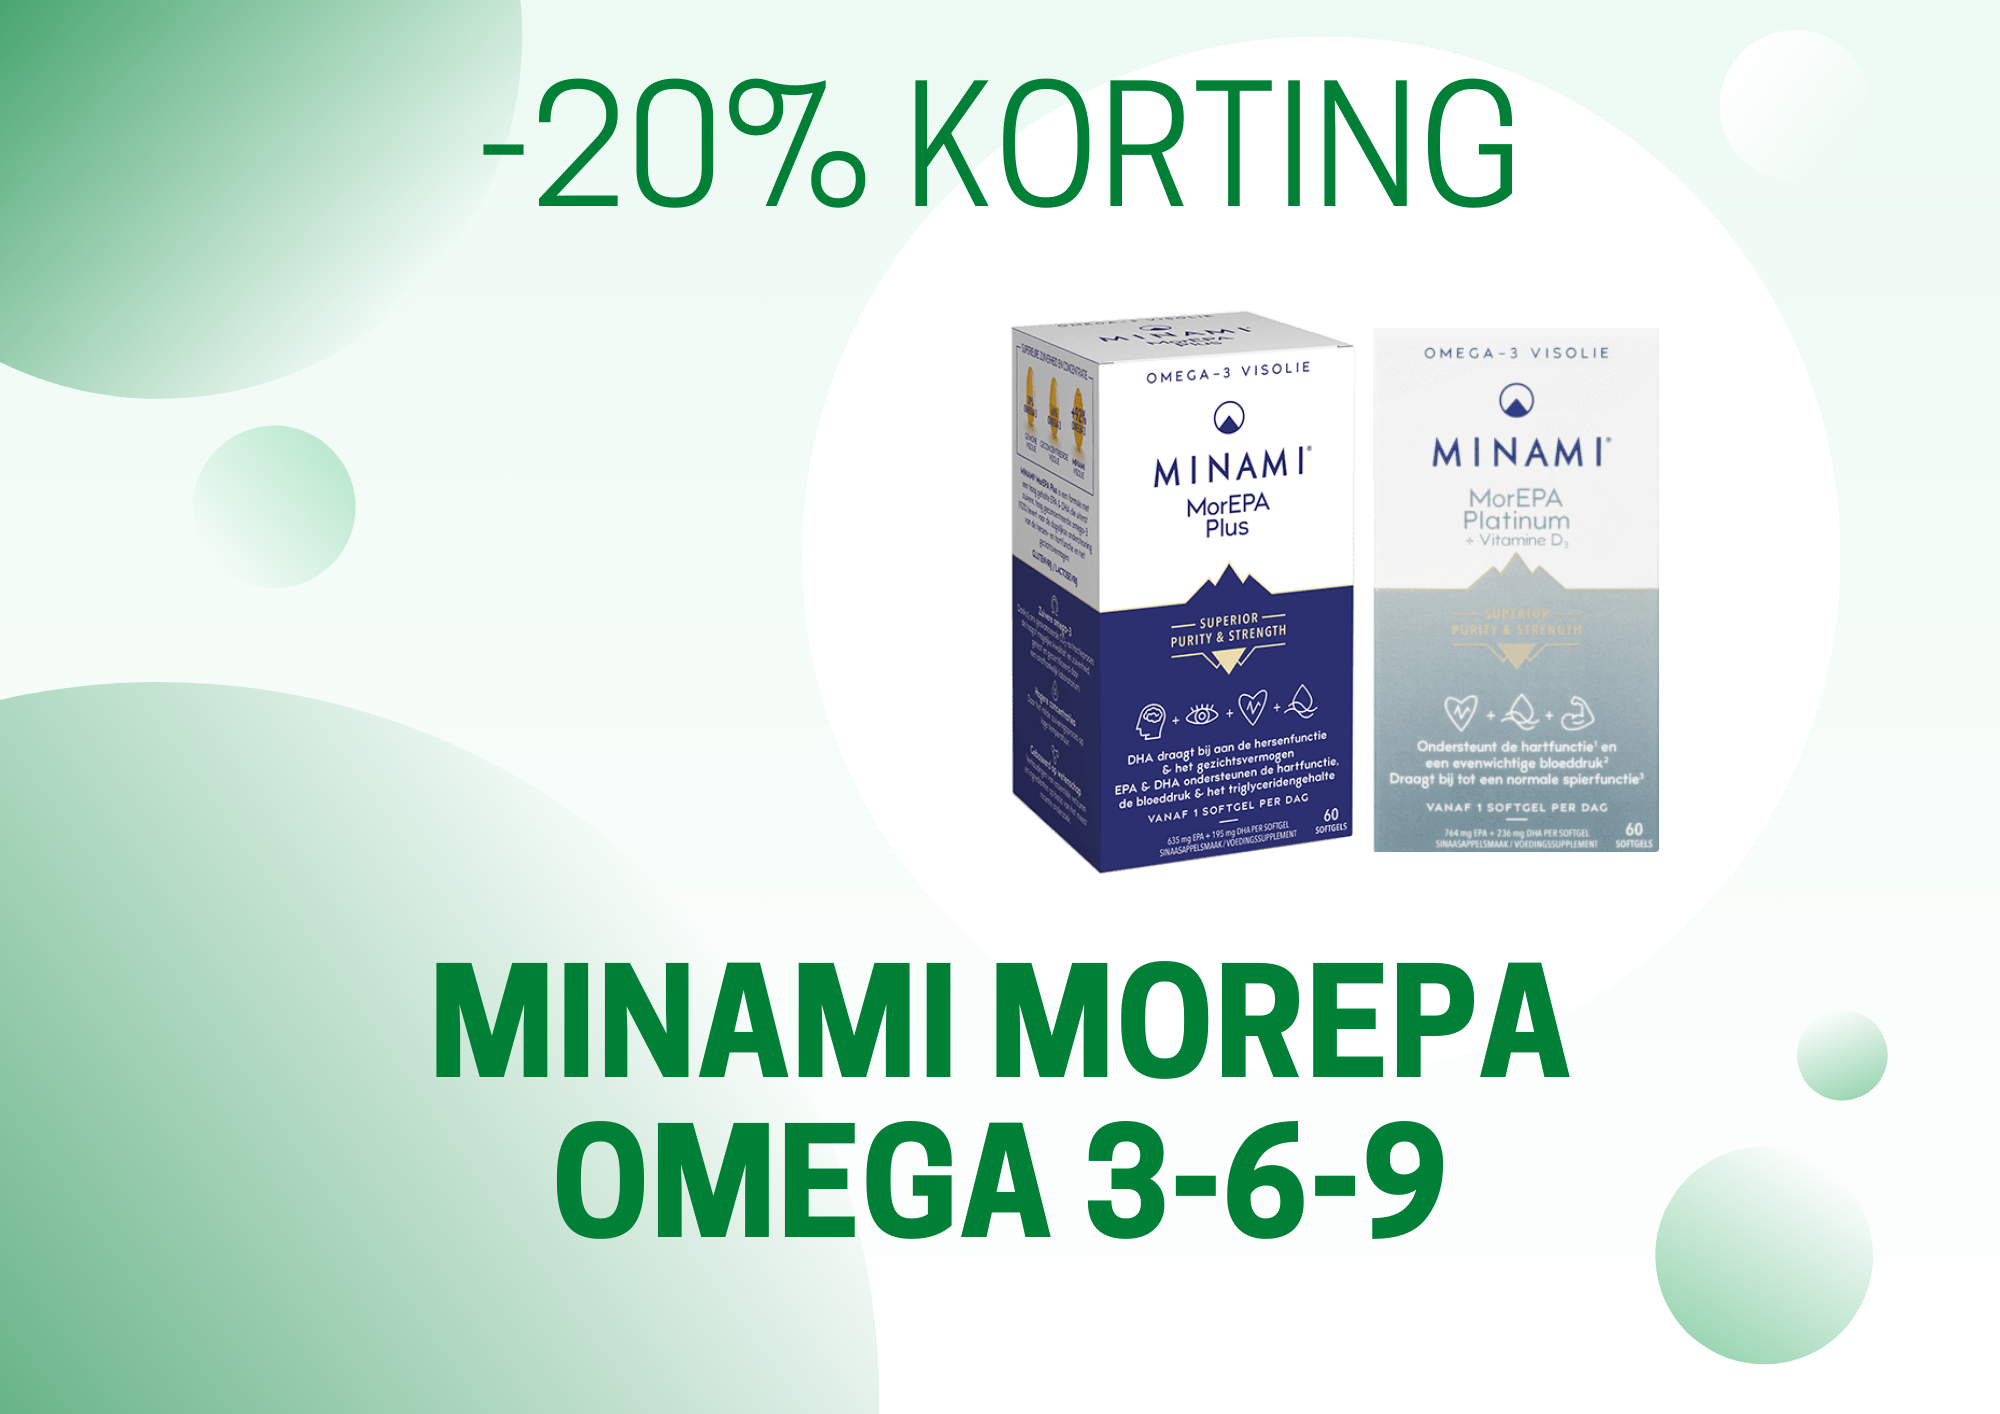 Promotie Minami Morepa omega 3-6-9 (liggend)